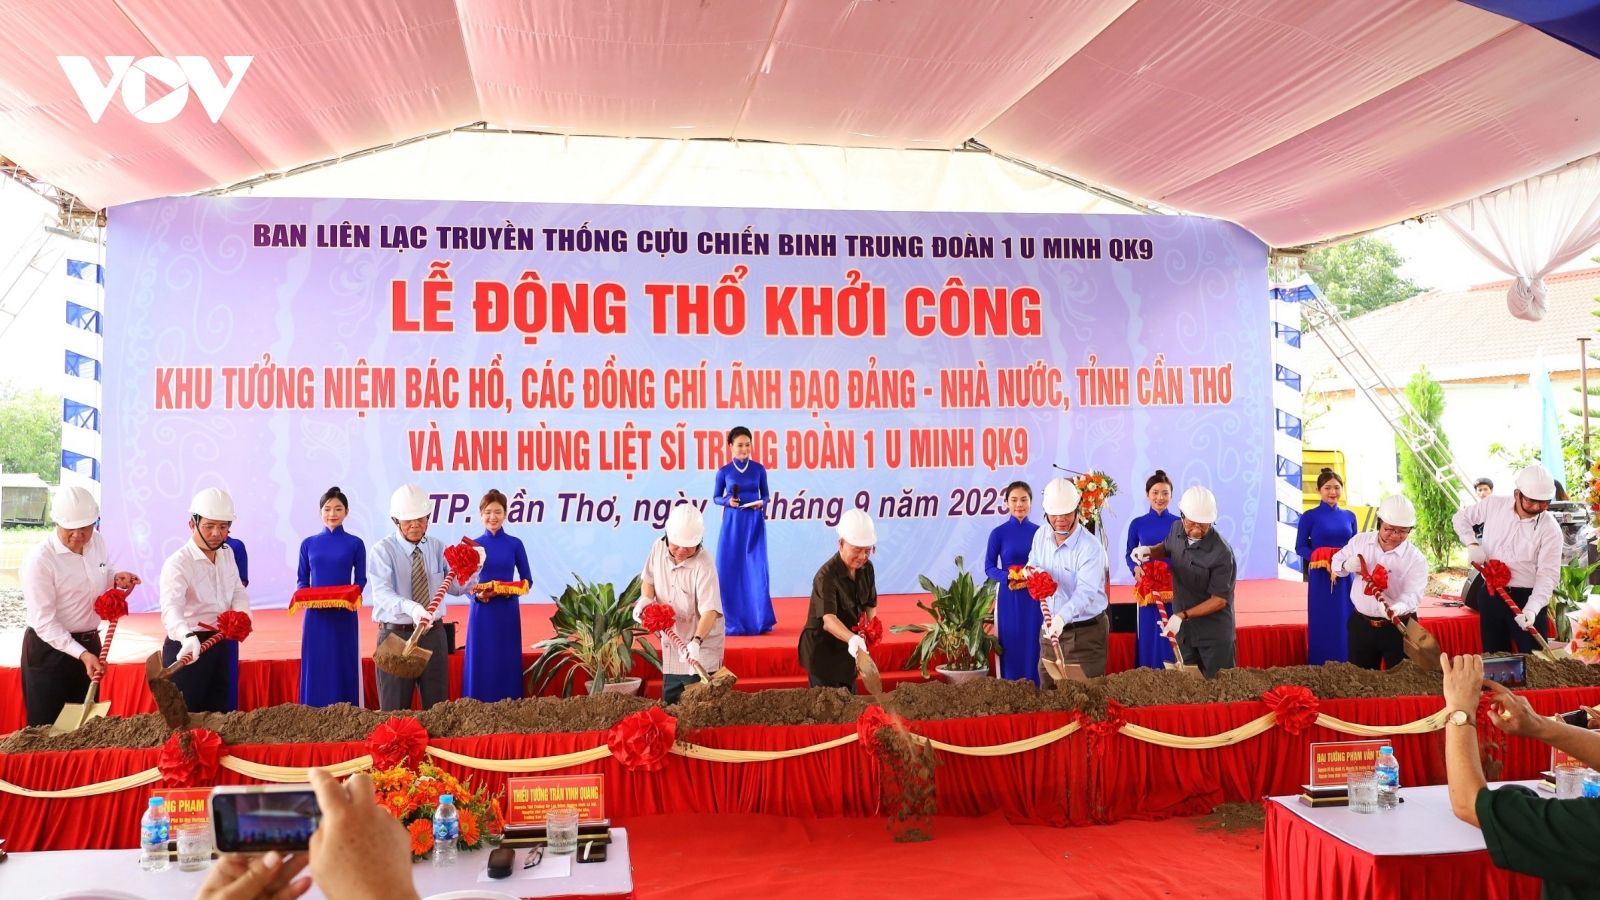 Ban liên lạc Trung đoàn 1 U Minh khởi công Khu tưởng niệm Bác Hồ